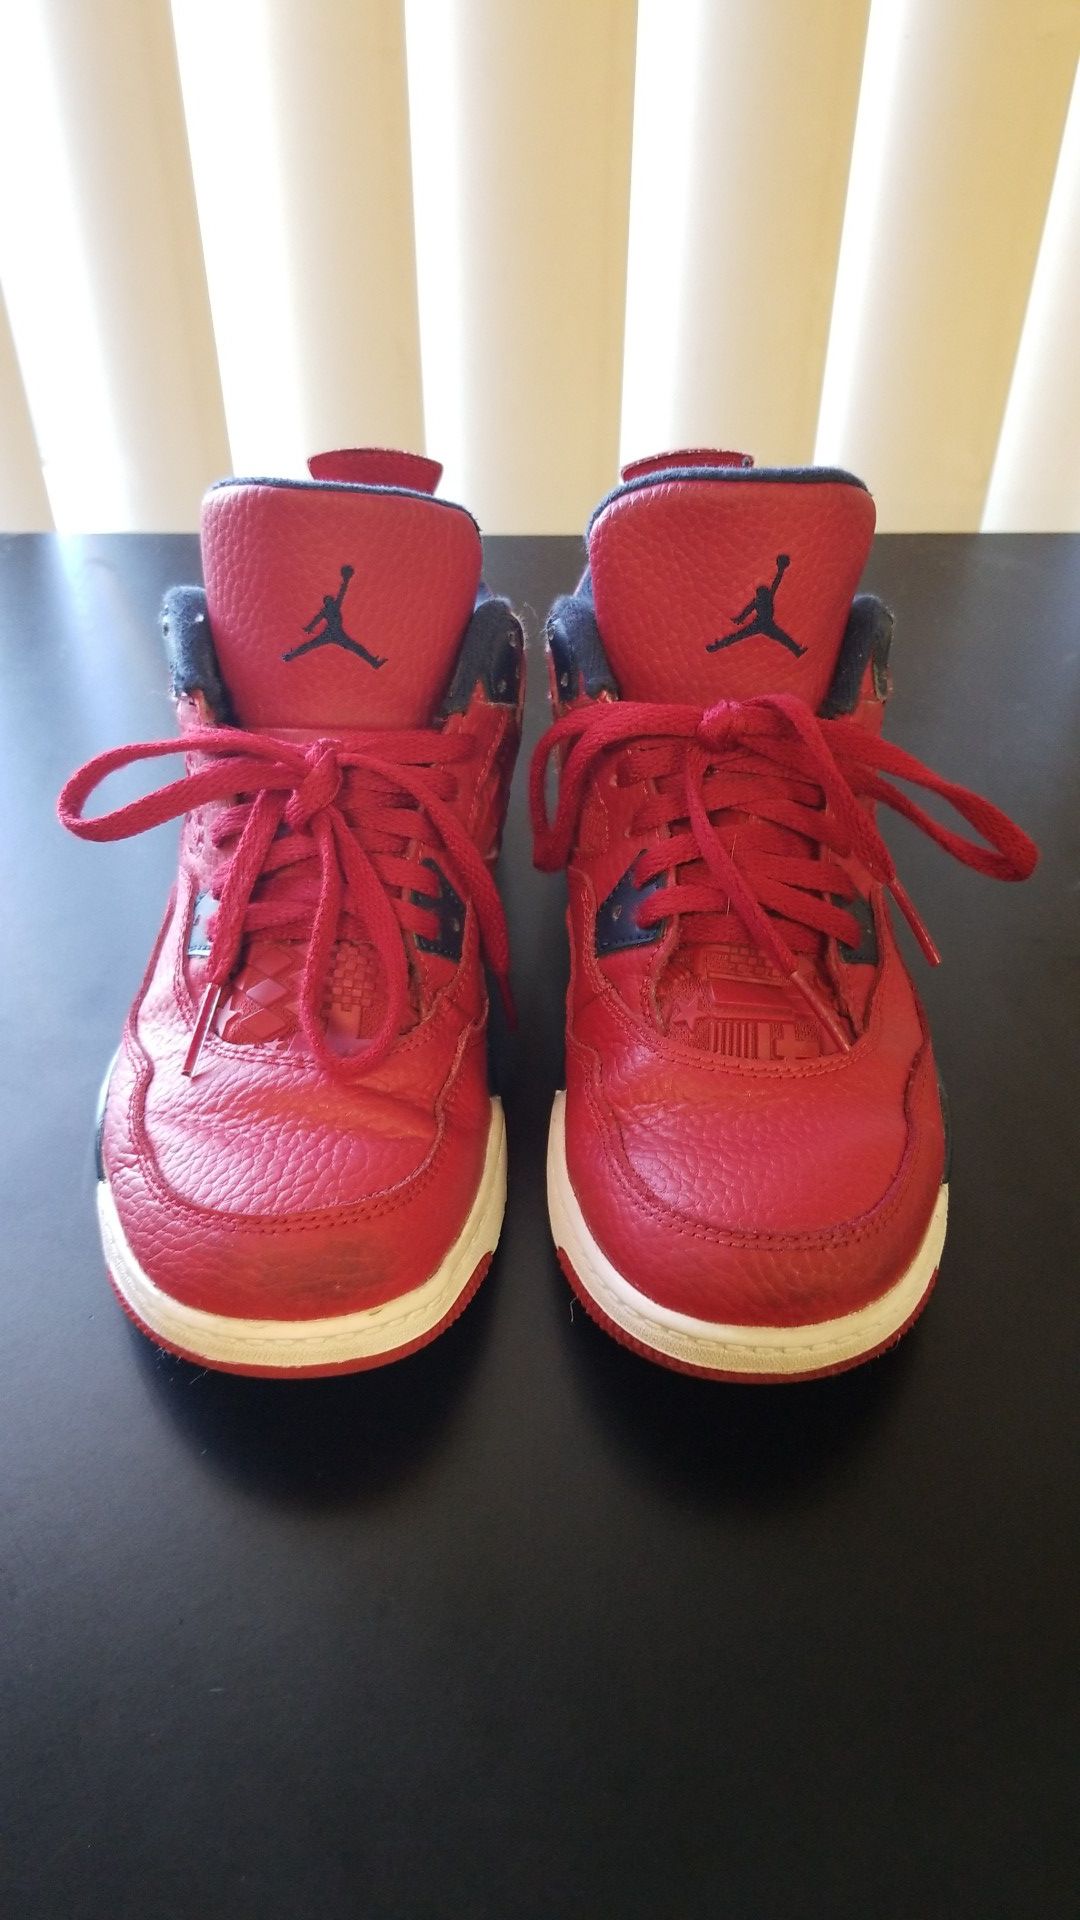 Nike Air Jordan 4 boys size 3Y